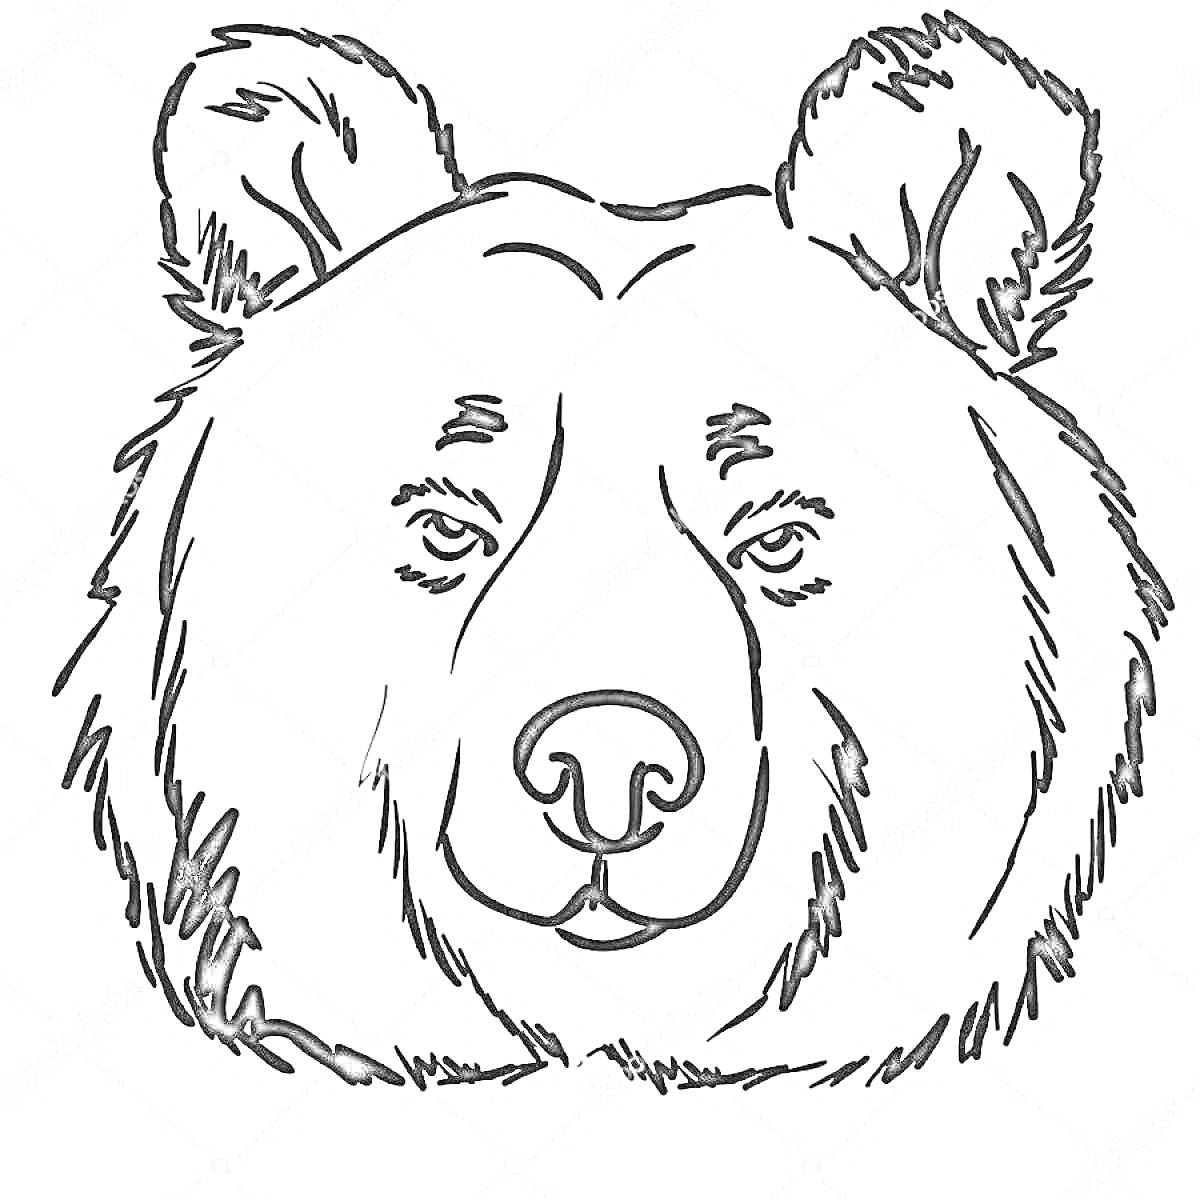 Раскраска Раскраска с изображением лица медведя с деталями морды, глаз, носа и ушей.